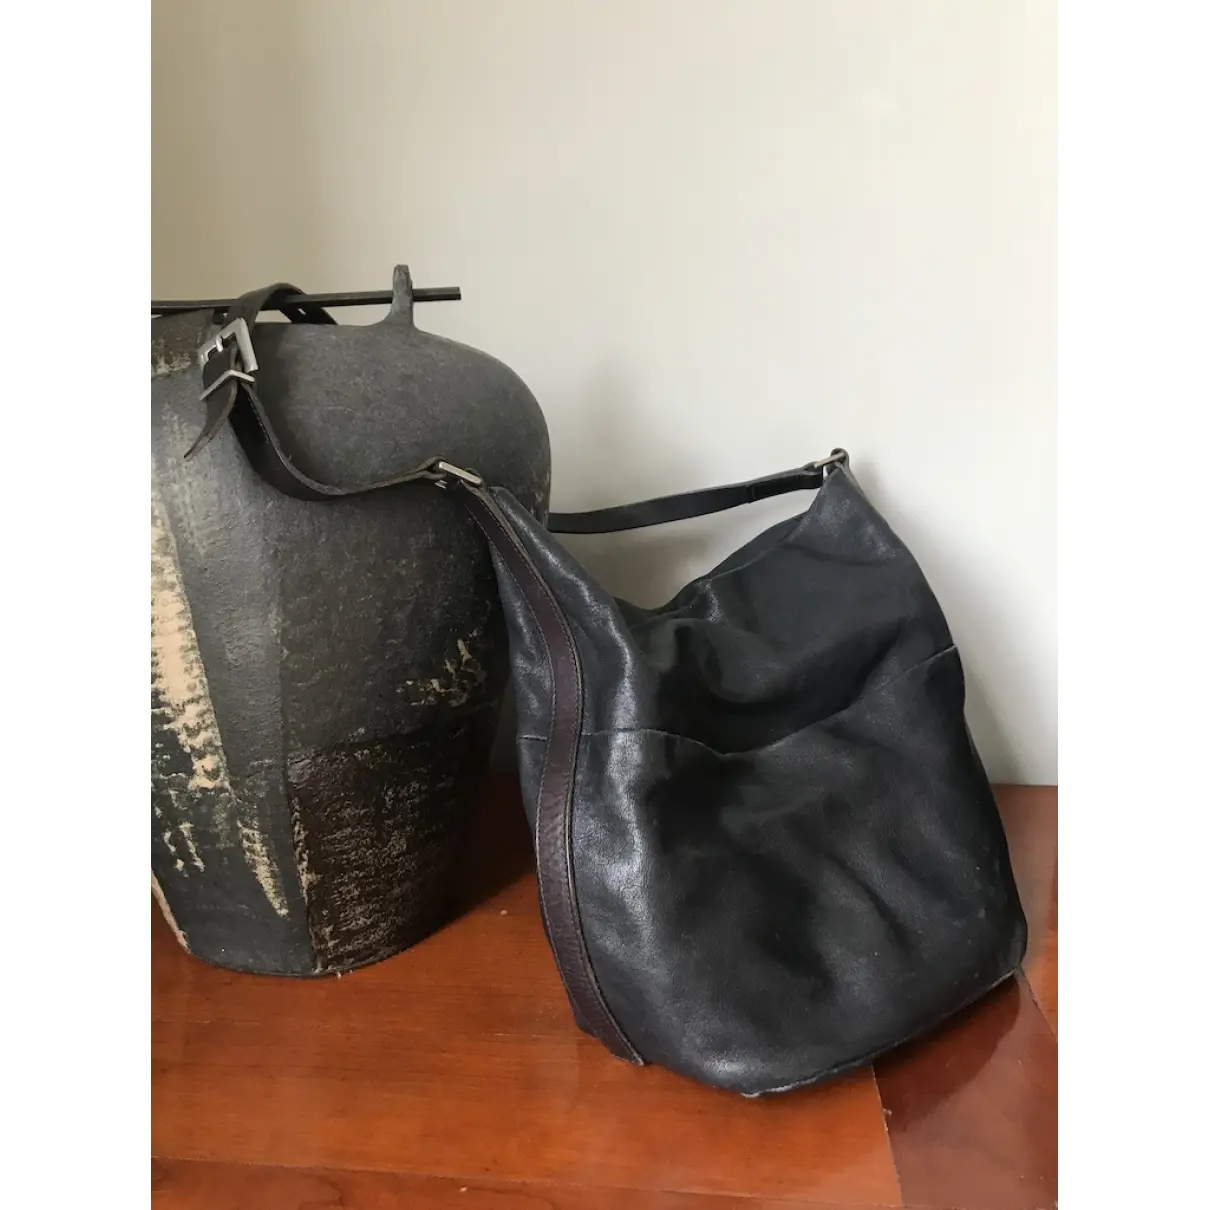 Buy Ally Capellino Leather handbag online